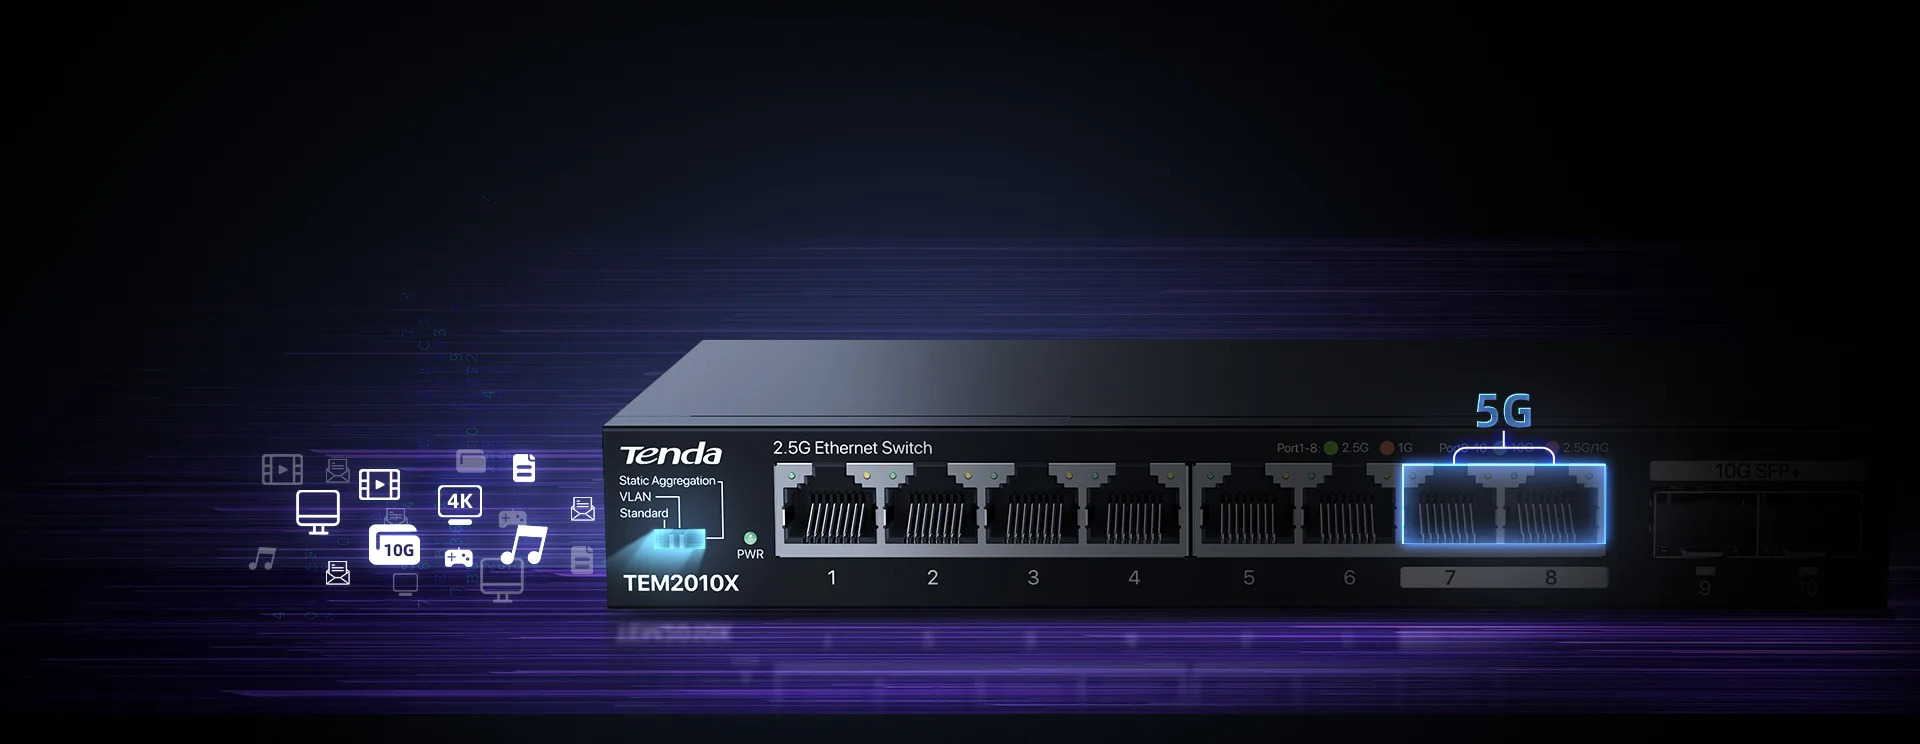 Switch Tenda TEM2010X, przykład użycia trybu agregacji statycznej i połączenia portów 7 i 8 w jeden superport